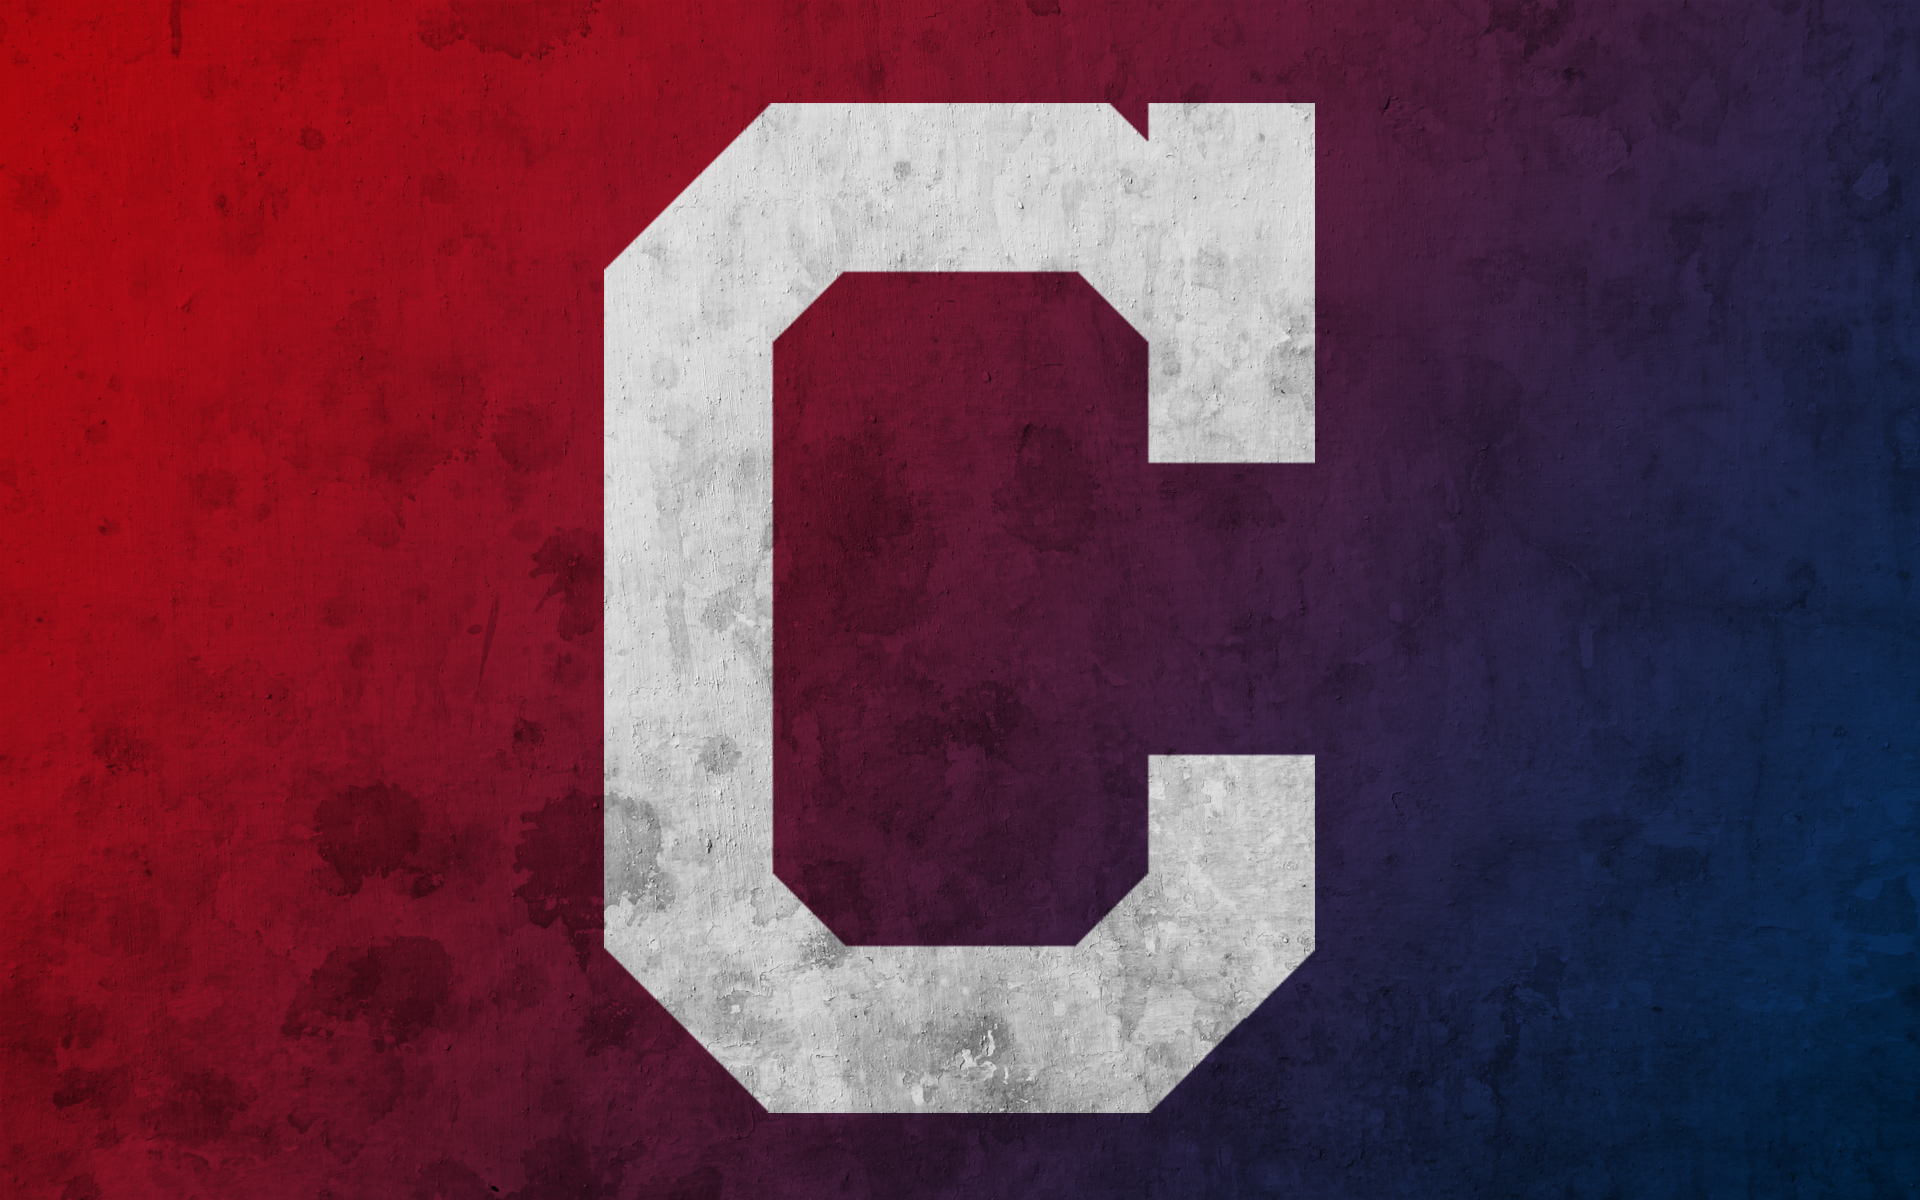 Cleveland Indians Wallpaper for Desktop